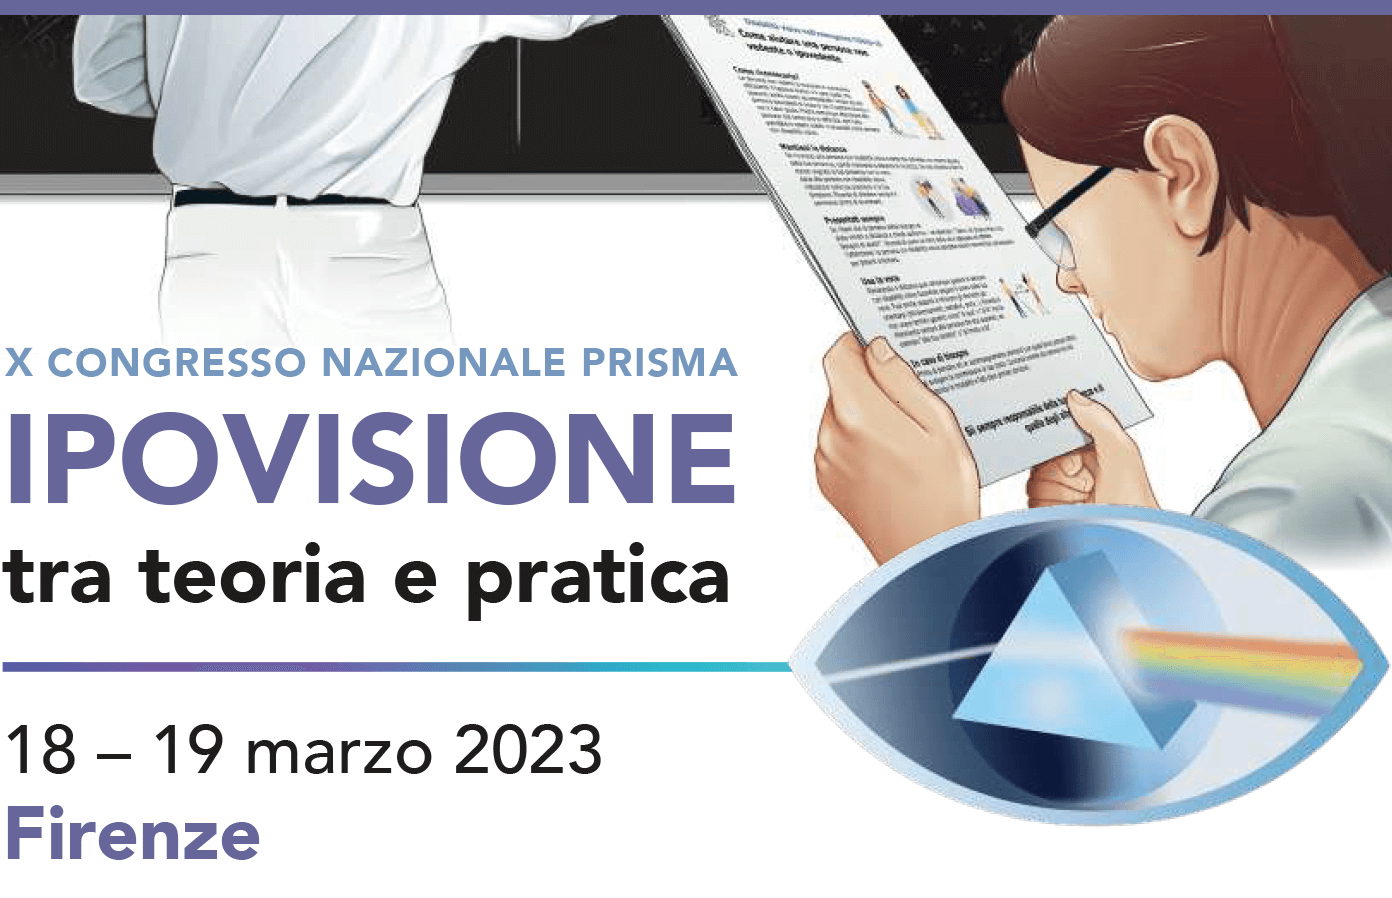 X Congresso Nazionale Prisma 2023 - IPOVISIONE